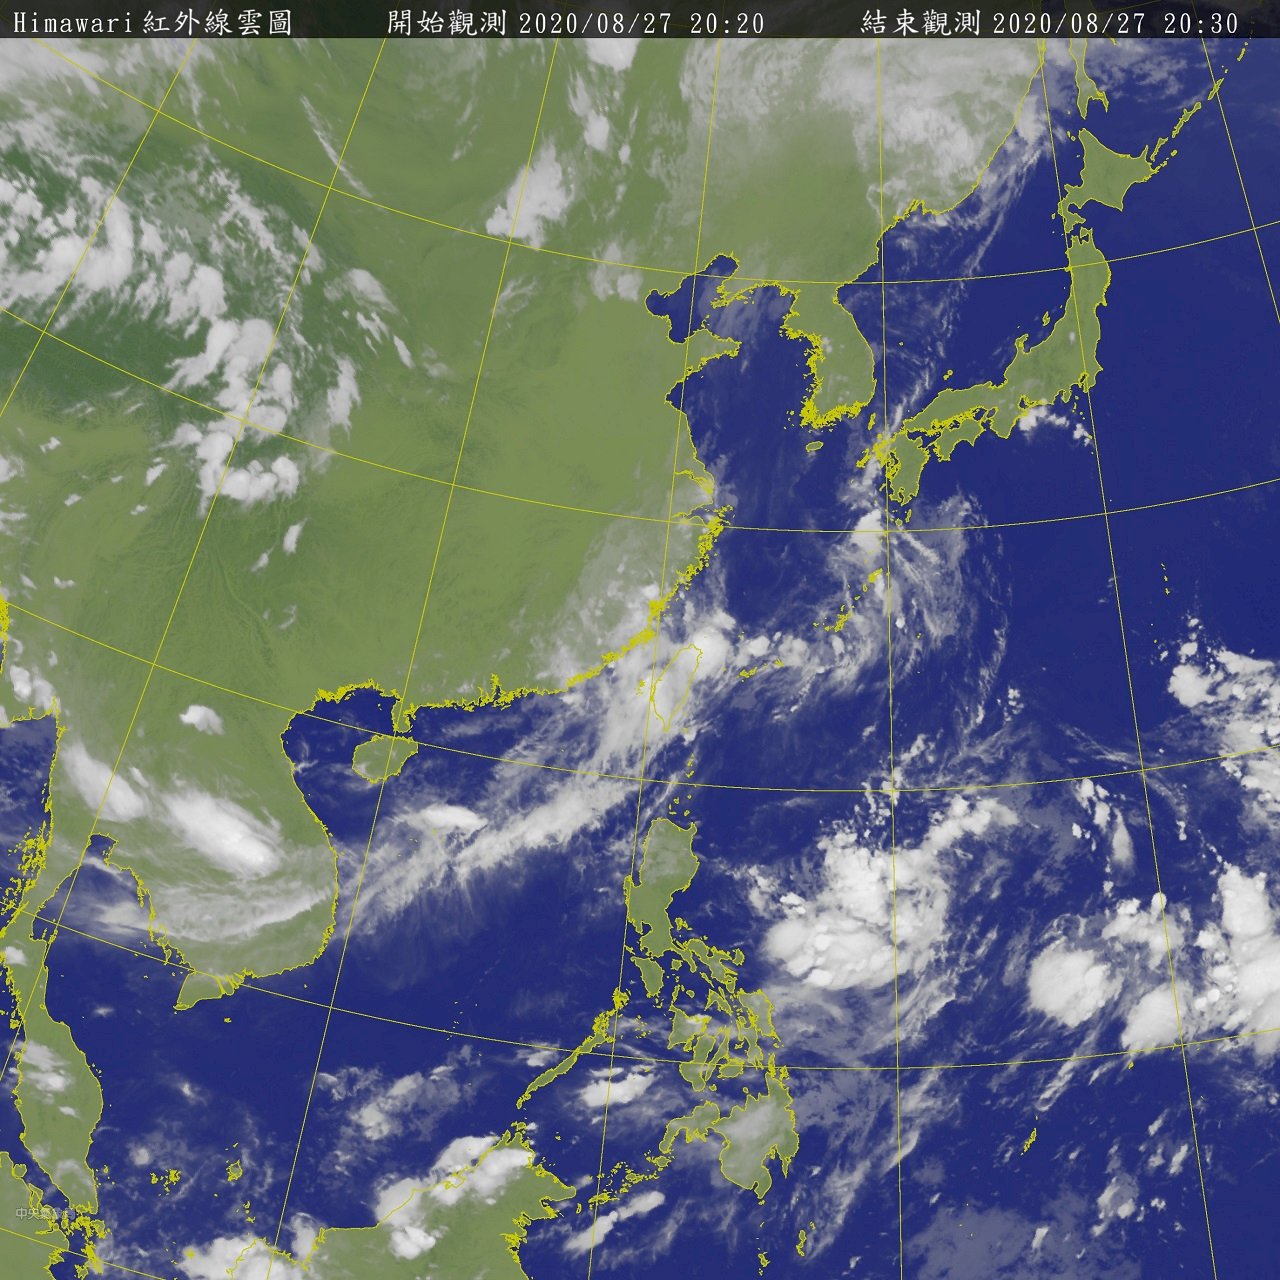 菲律賓東方熱帶系統發展中 估最快29日成颱